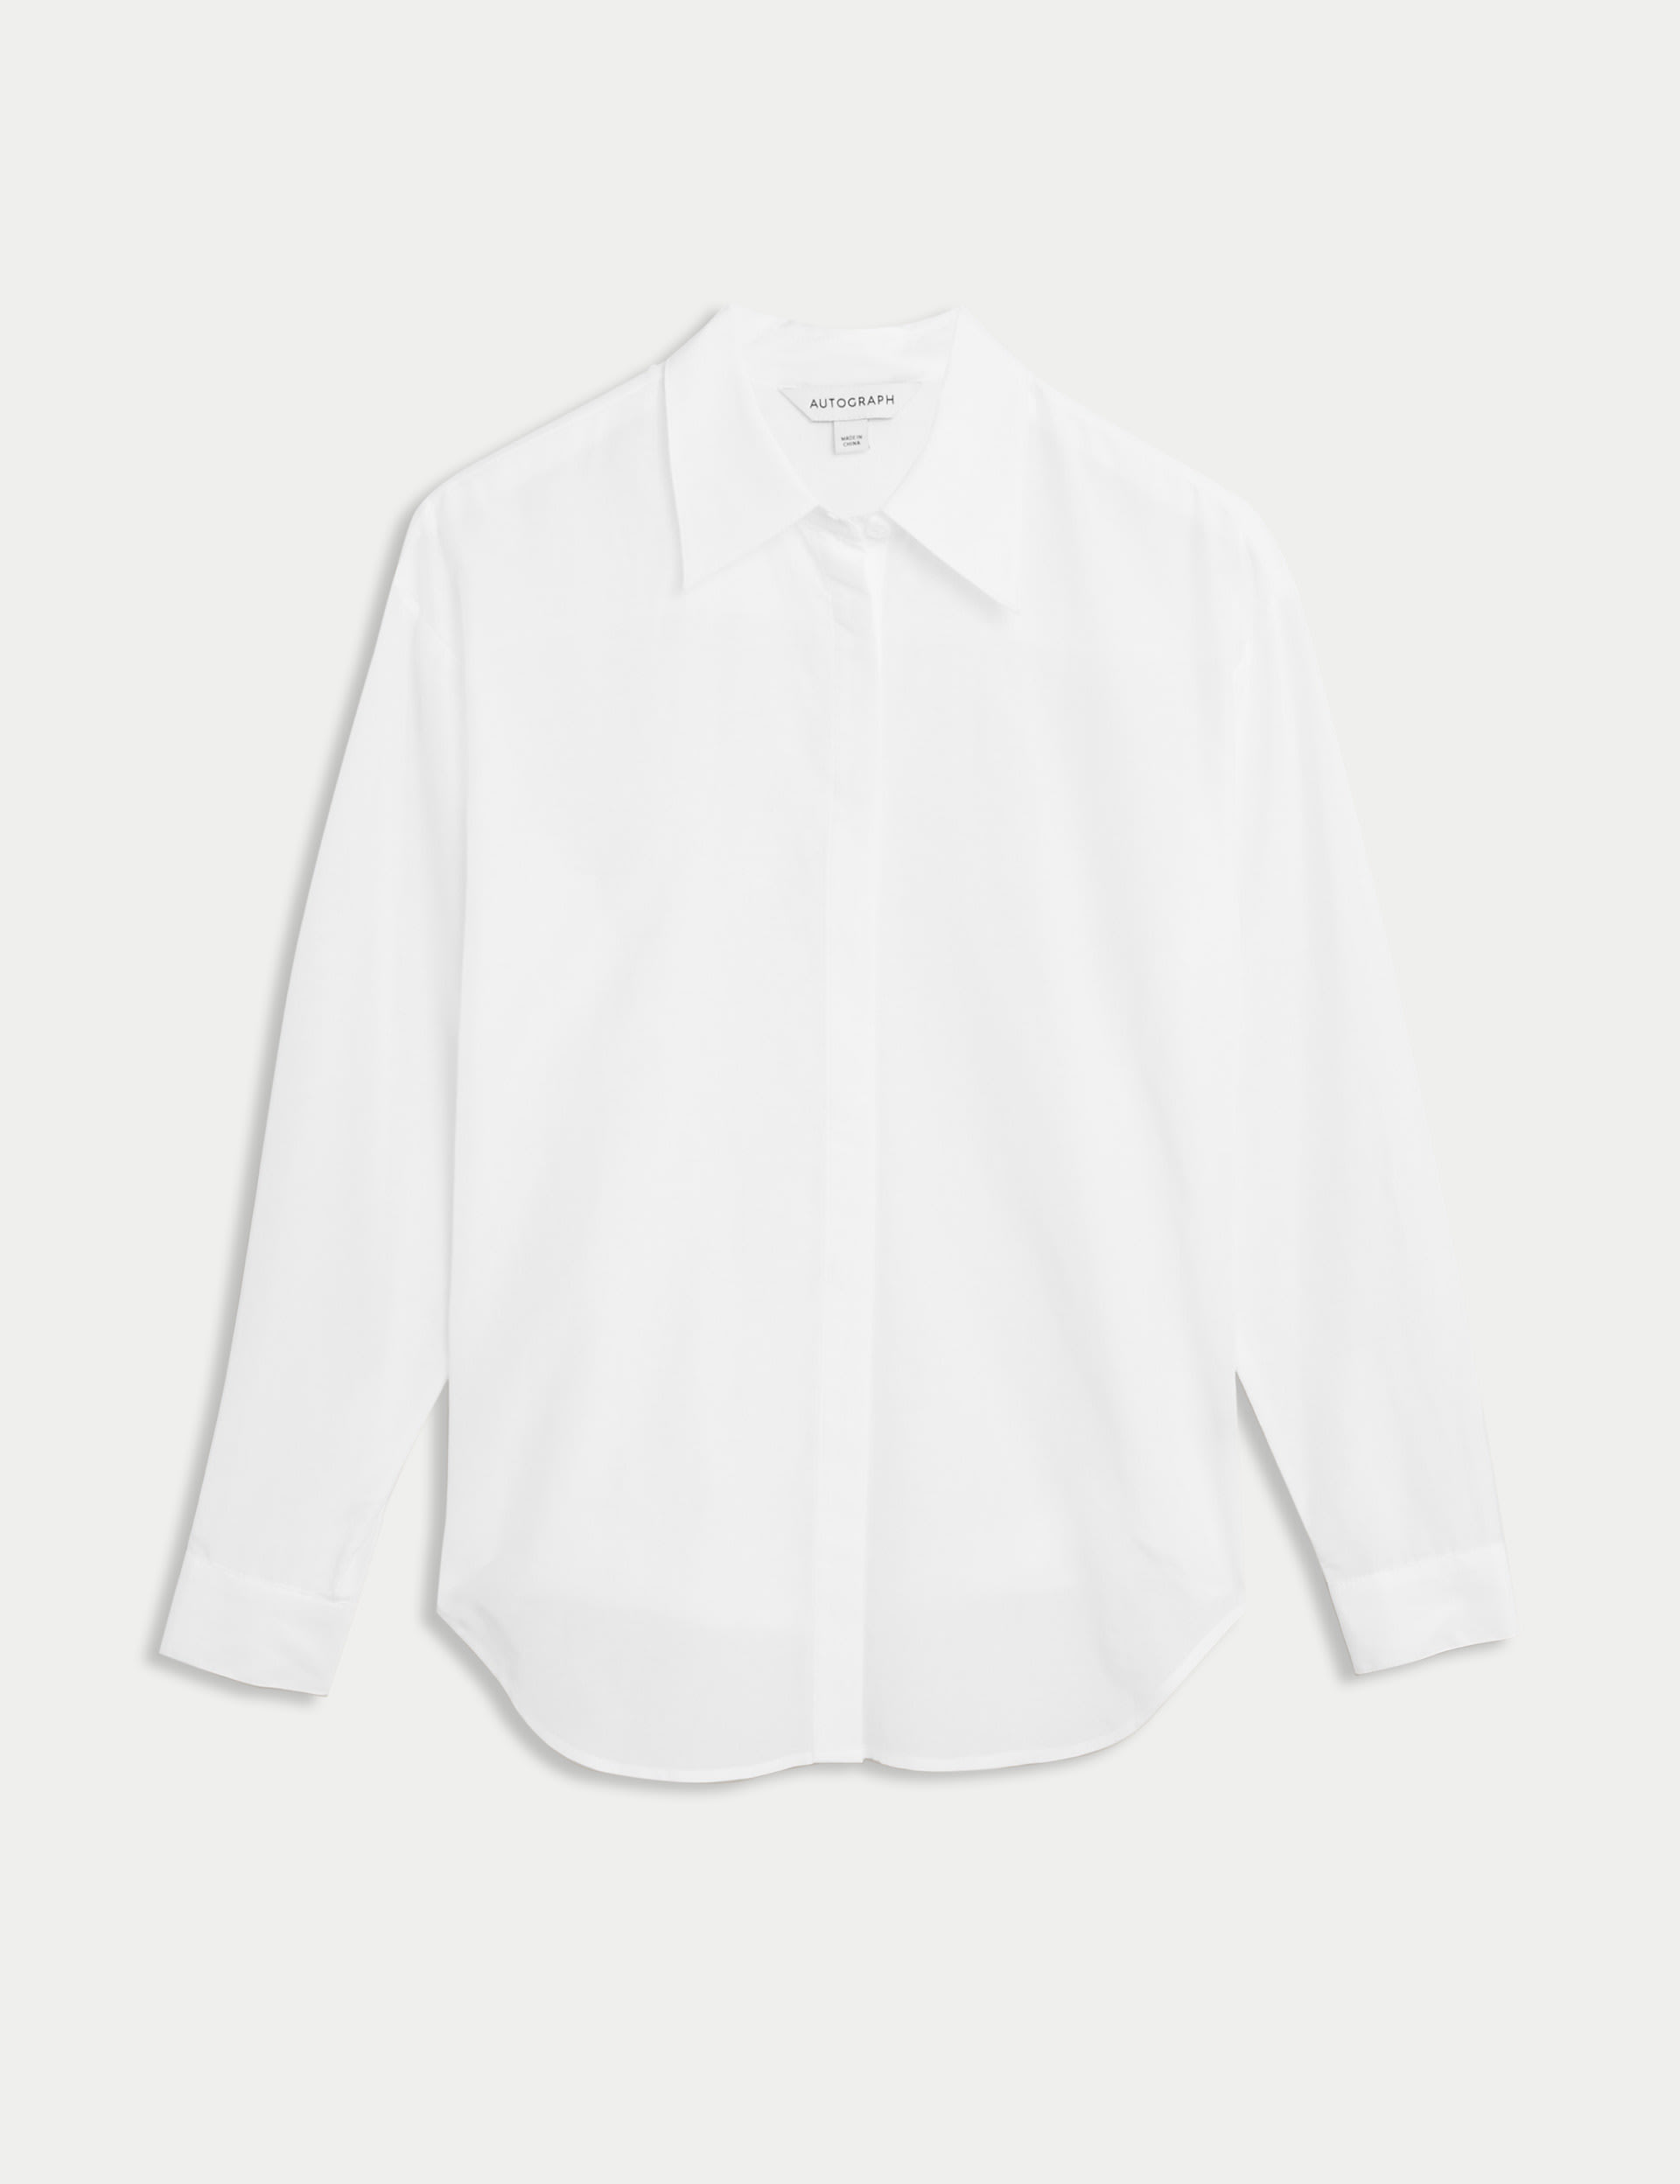 Silk Blend Collared Long Sleeve Shirt 2 of 6